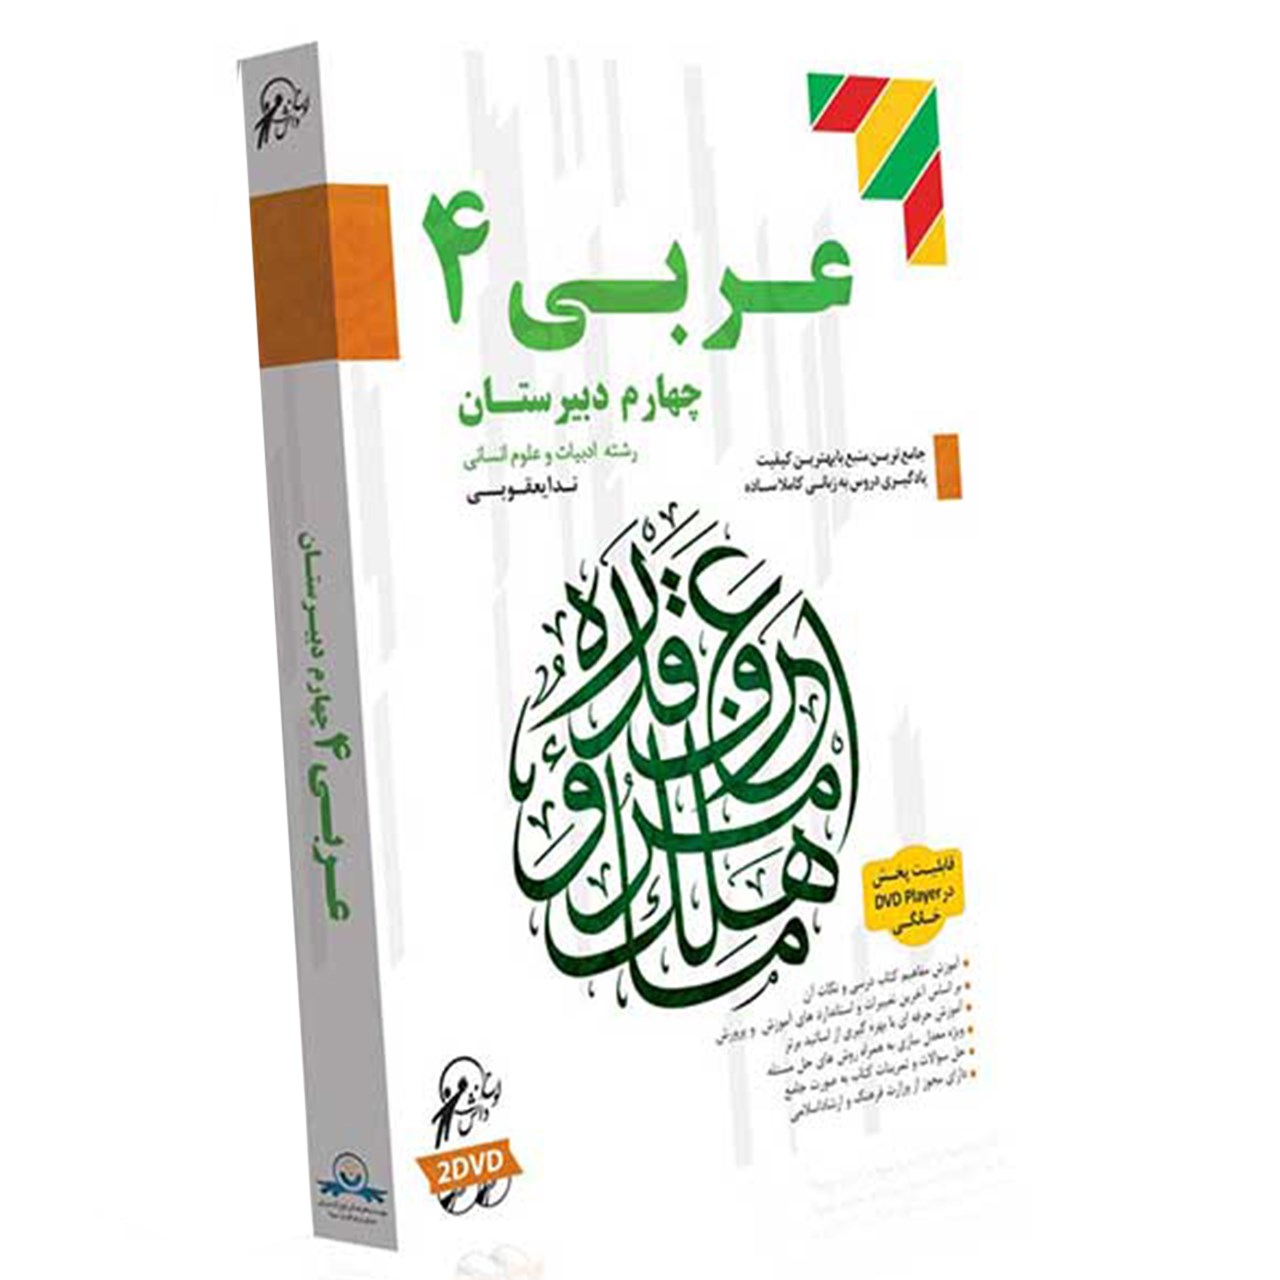 آموزش تصویری عربی 4 نشر لوح دانش